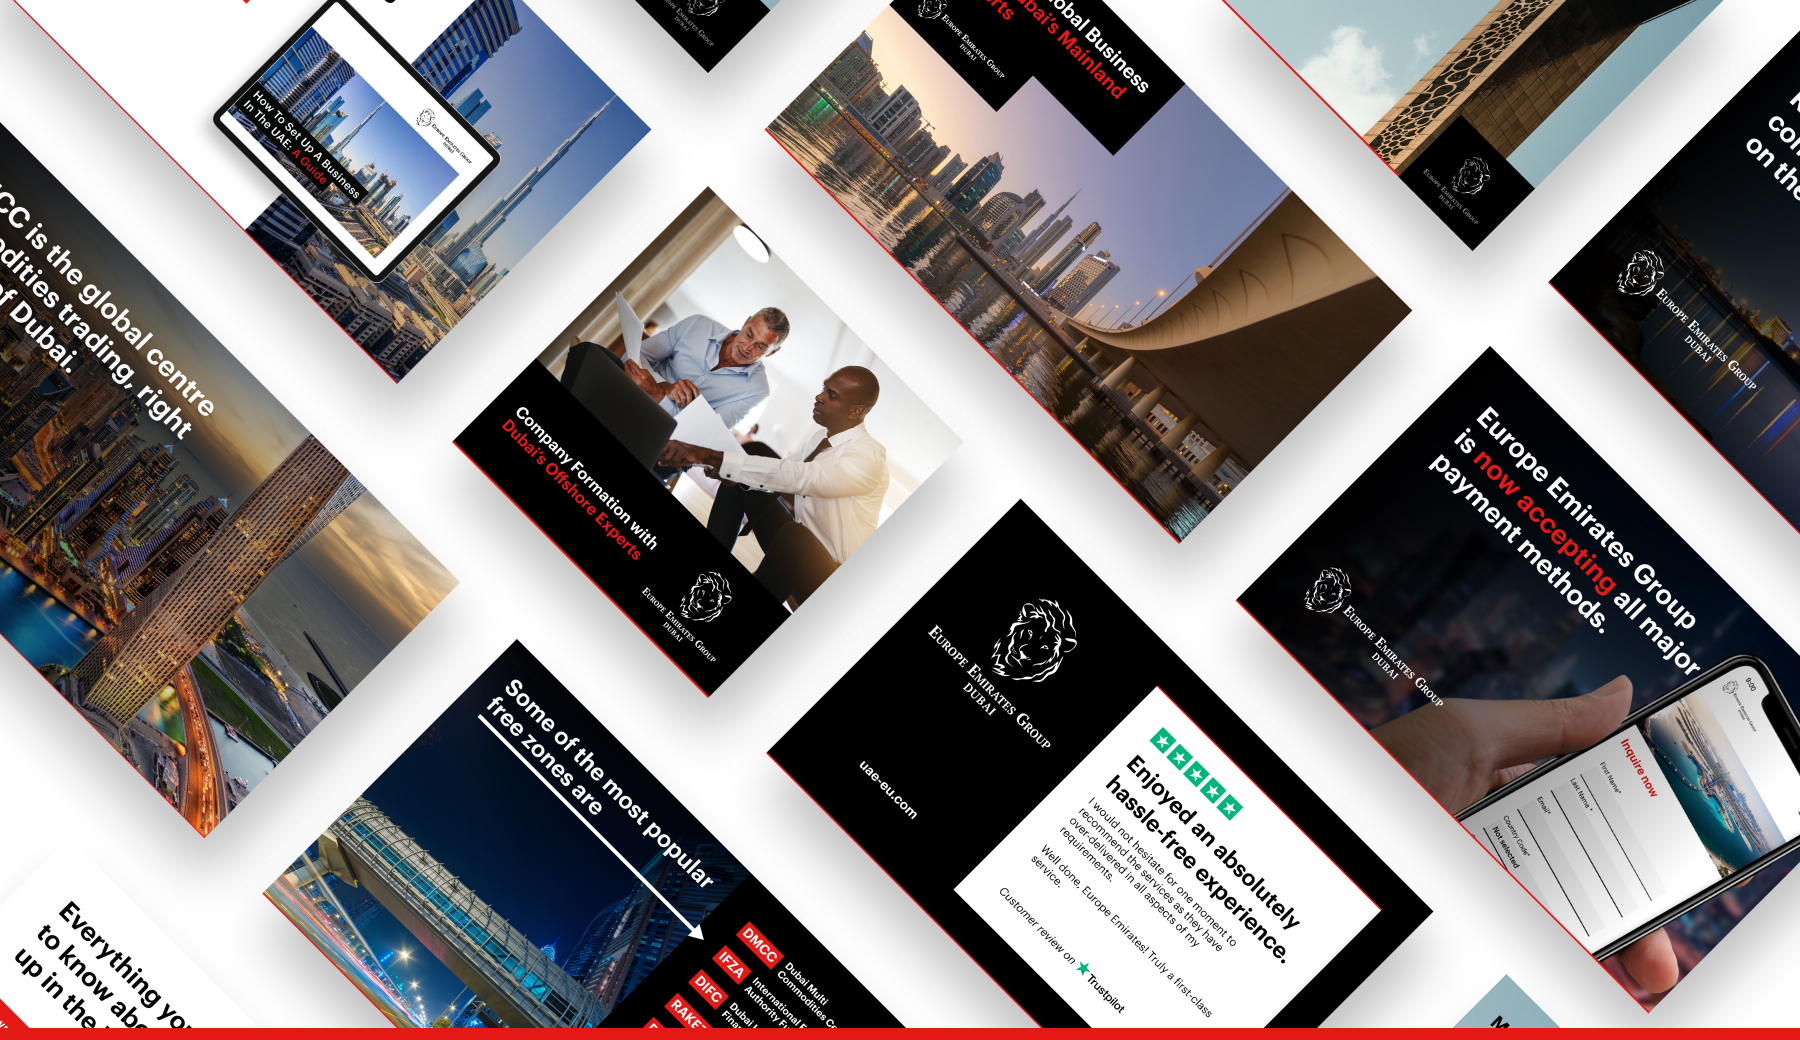 Europe Emirates Group: Digital Marketing case study